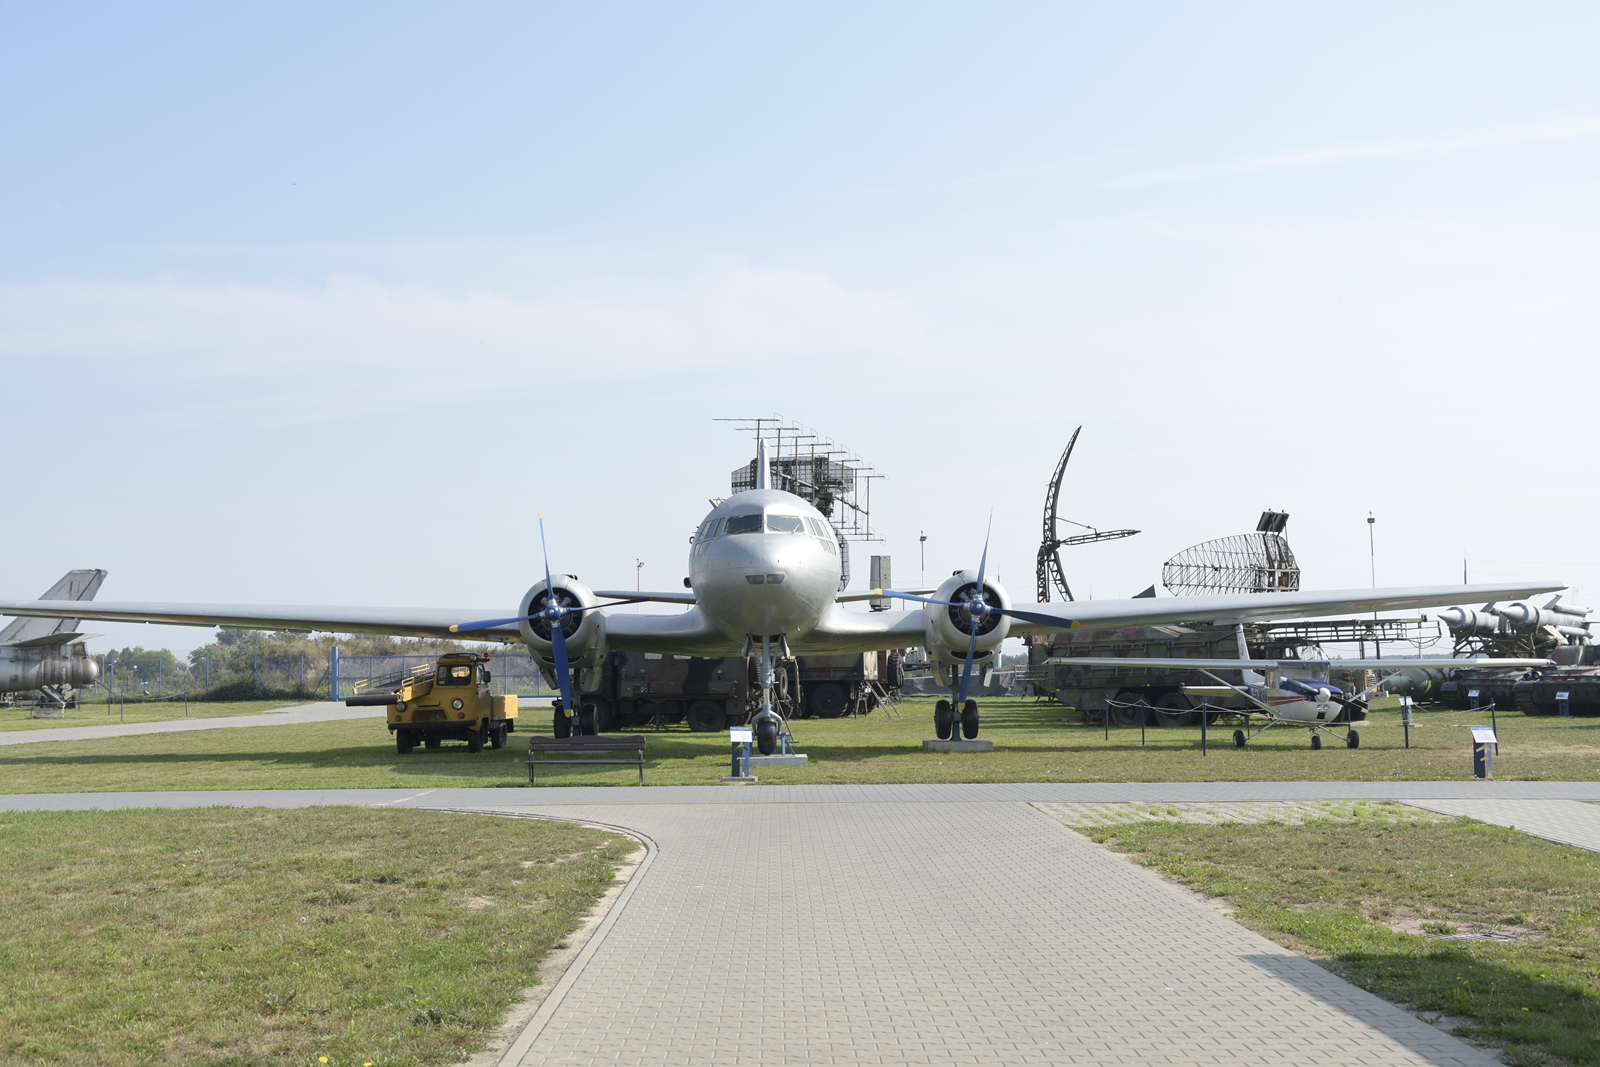 muzeum sił powietrznych